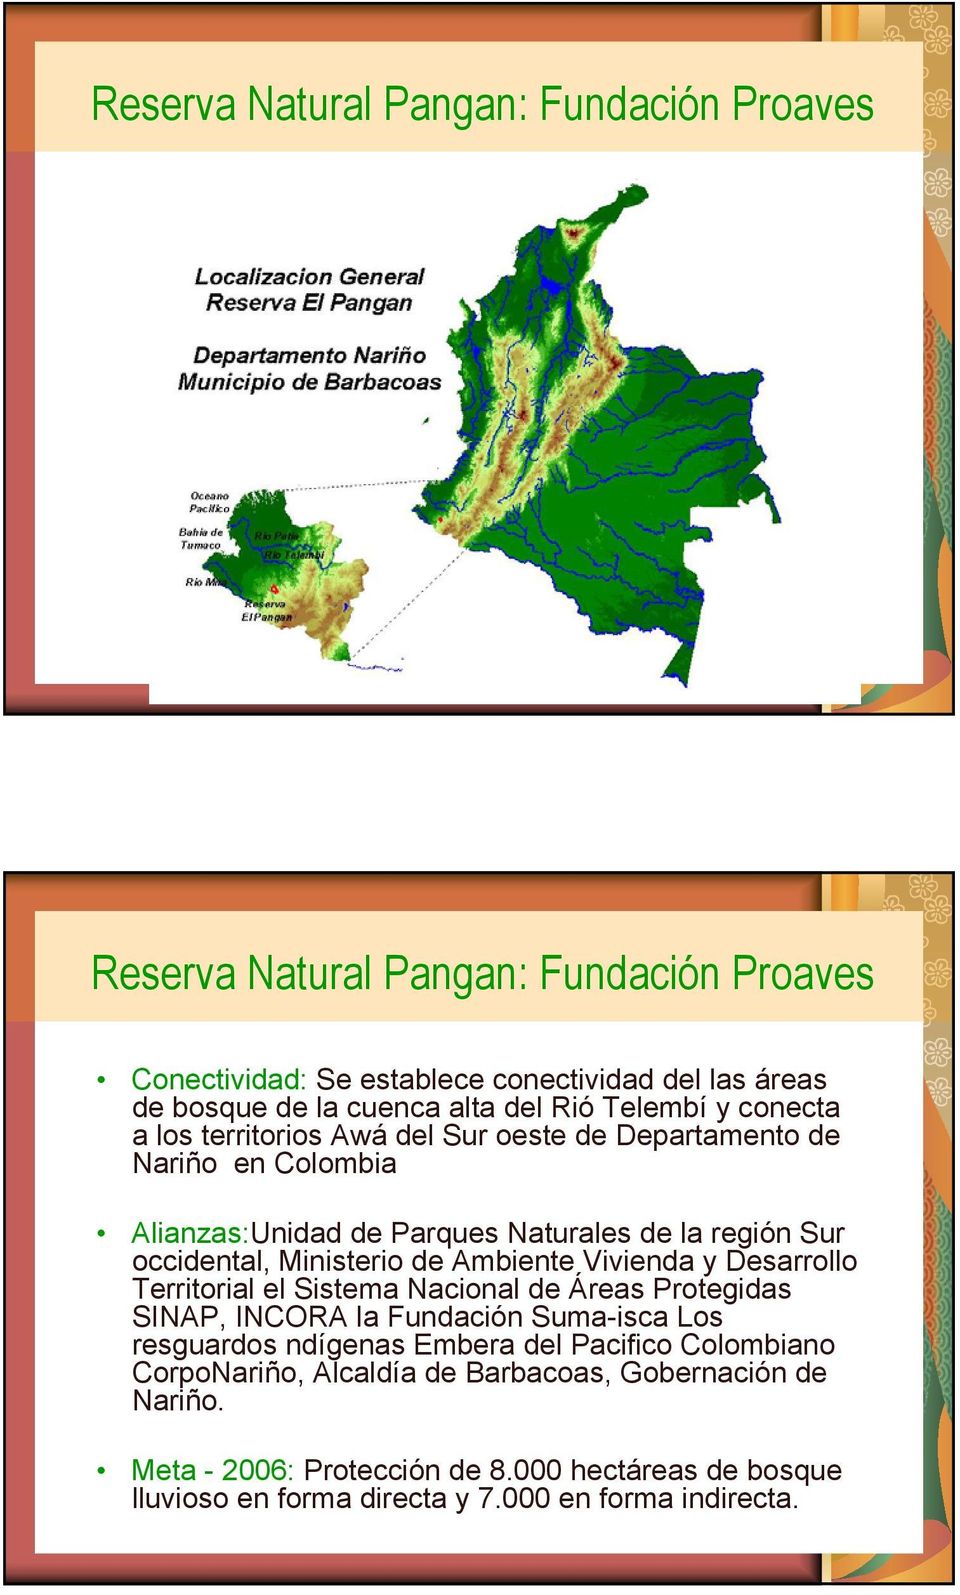 Ministerio de Ambiente Vivienda y Desarrollo Territorial el Sistema Nacional de Áreas Protegidas SINAP, INCORA la Fundación Suma-isca Los resguardos ndígenas Embera del